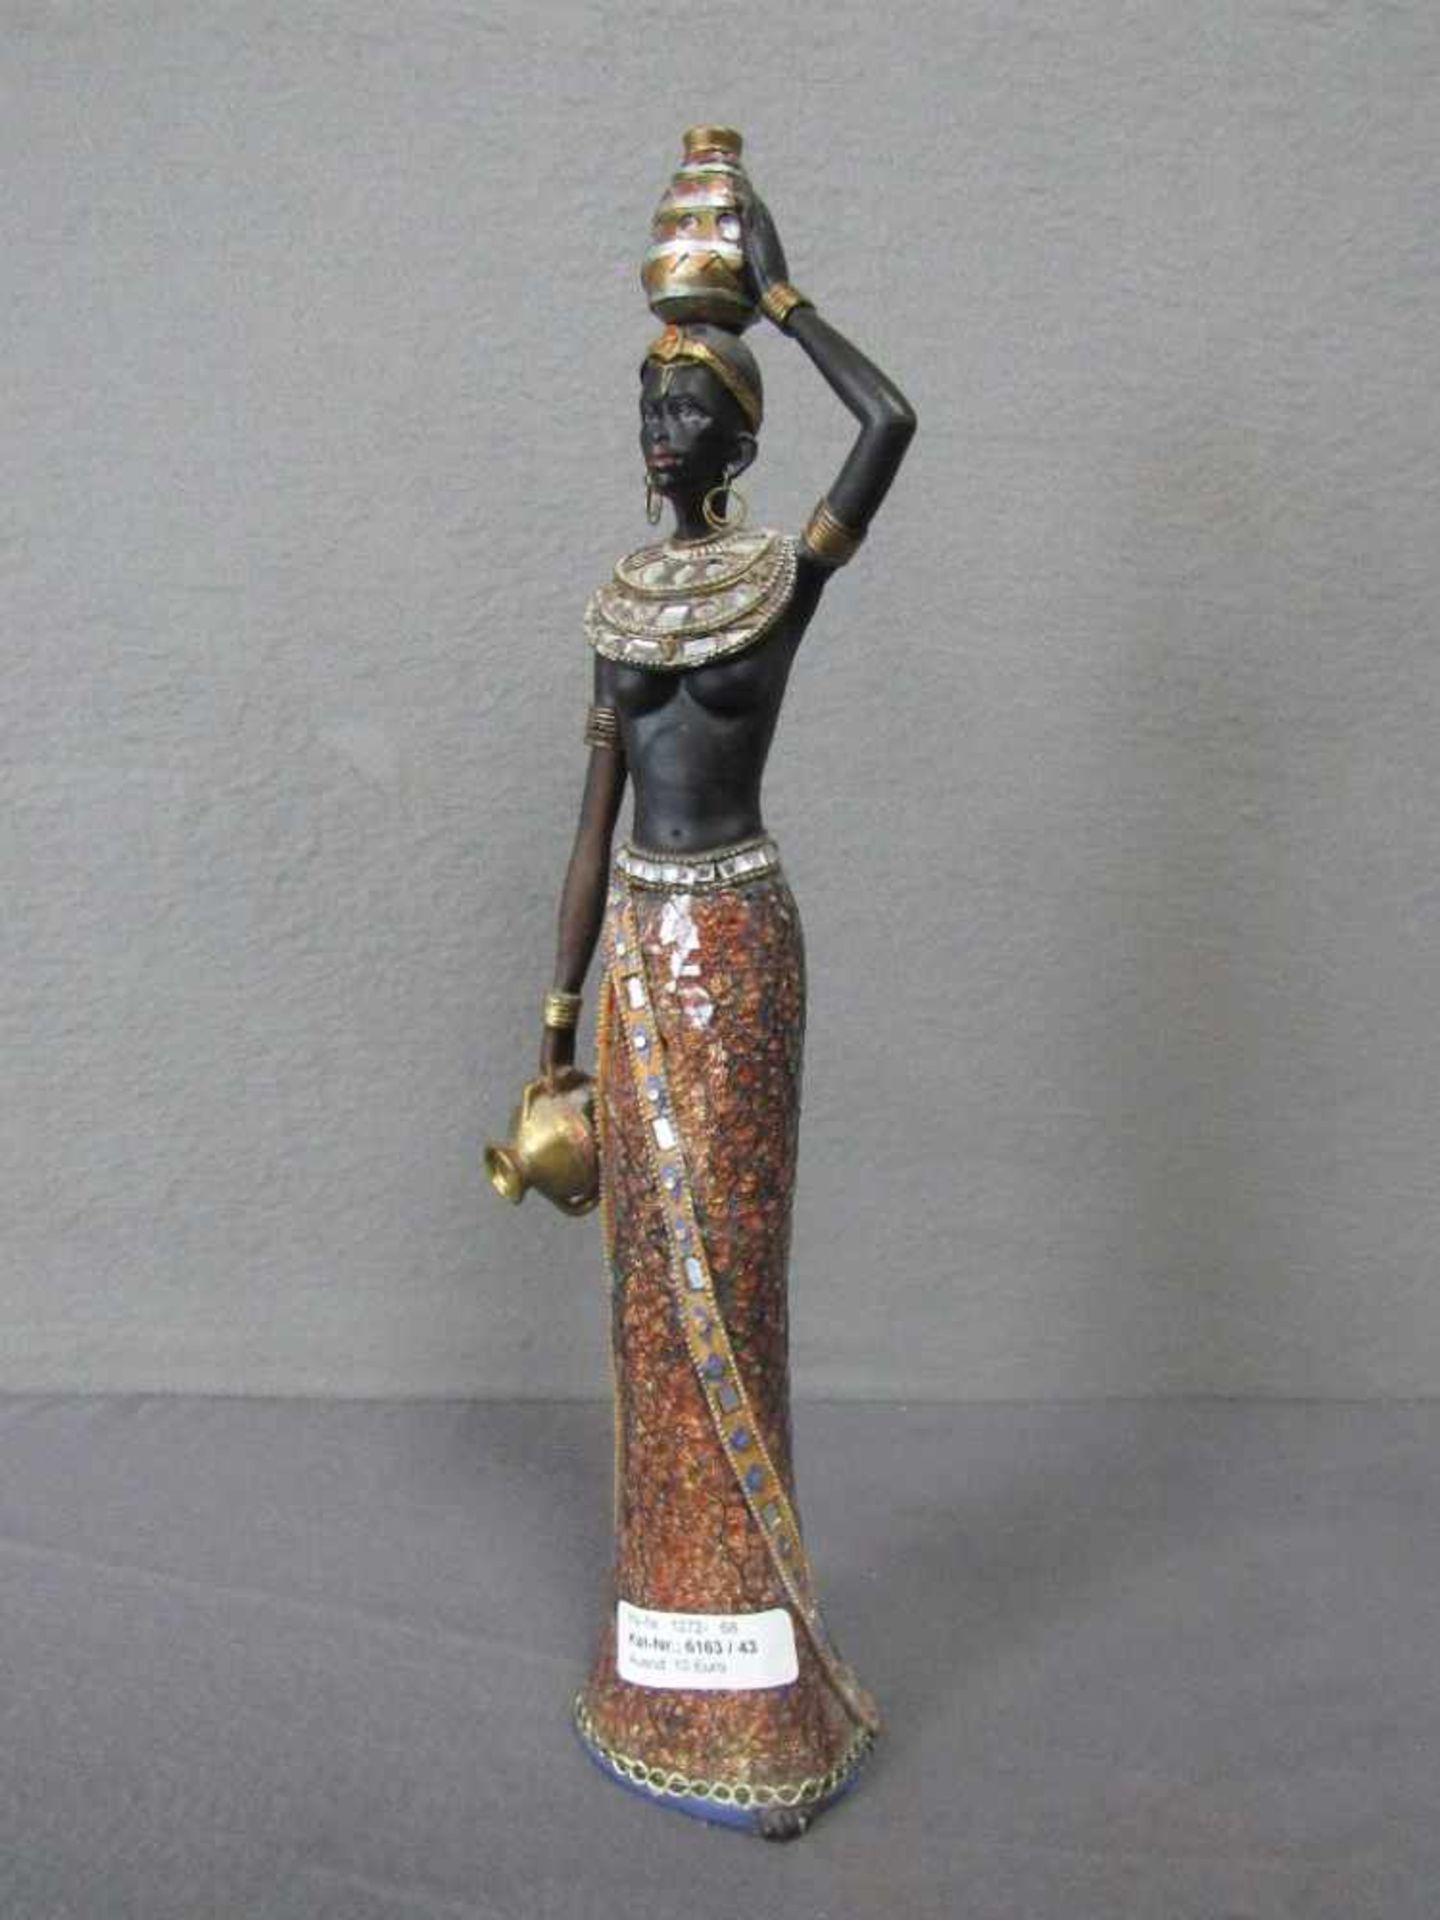 Skulptur einer farbigen Wasserträgerin 40cm hoch- - -20.00 % buyer's premium on the hammer price19.